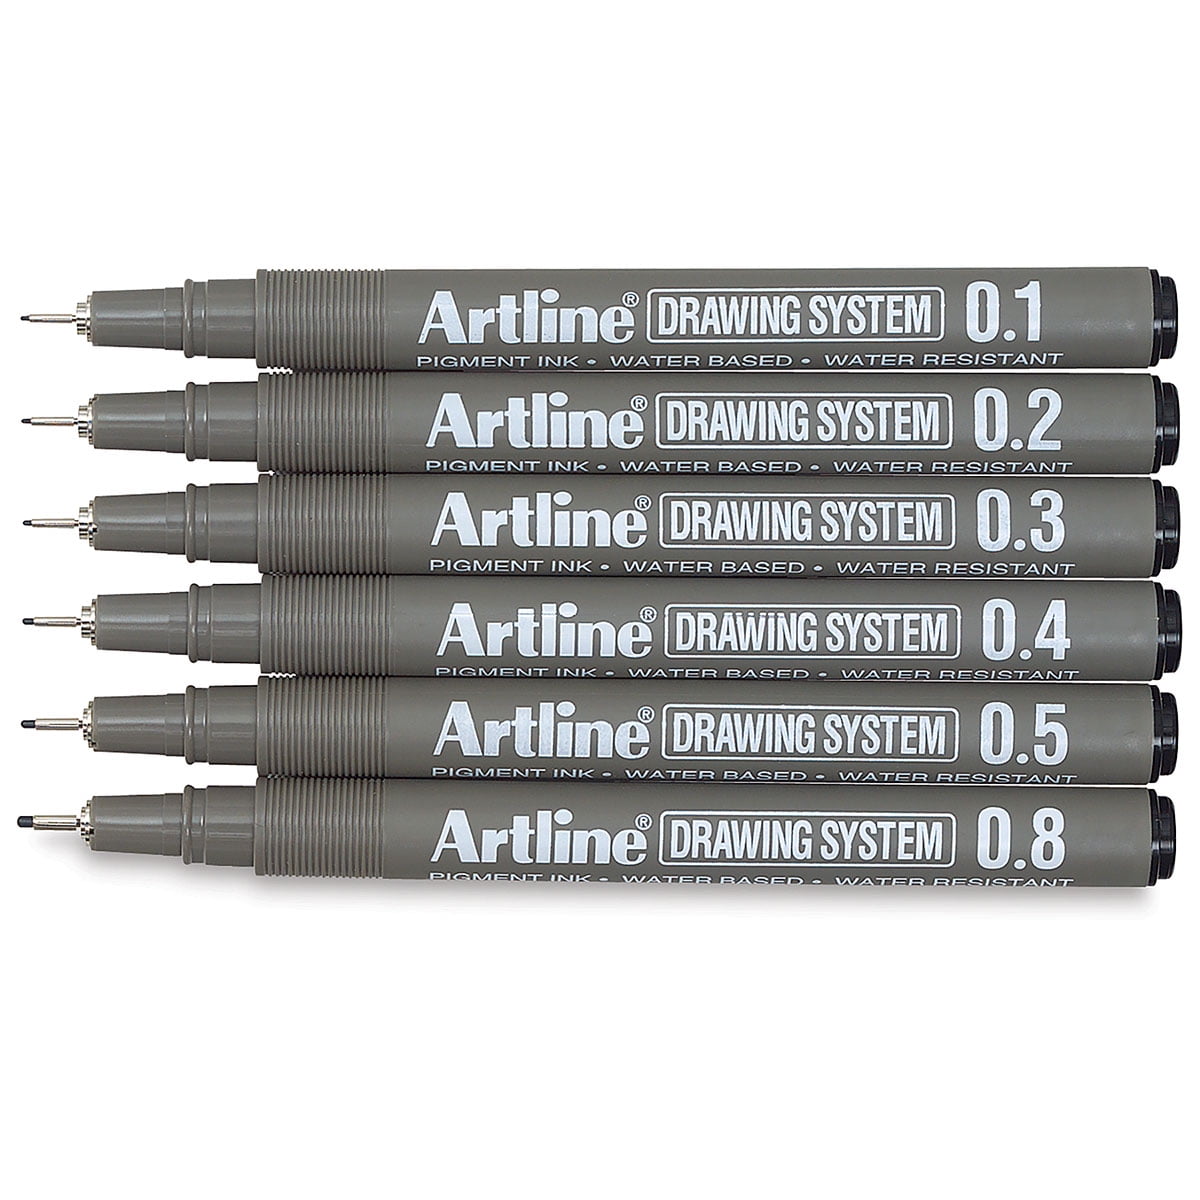 Mr. Pen- Drawing Pens, Black Multiliner, 8 Pack, Fineliner Pen 